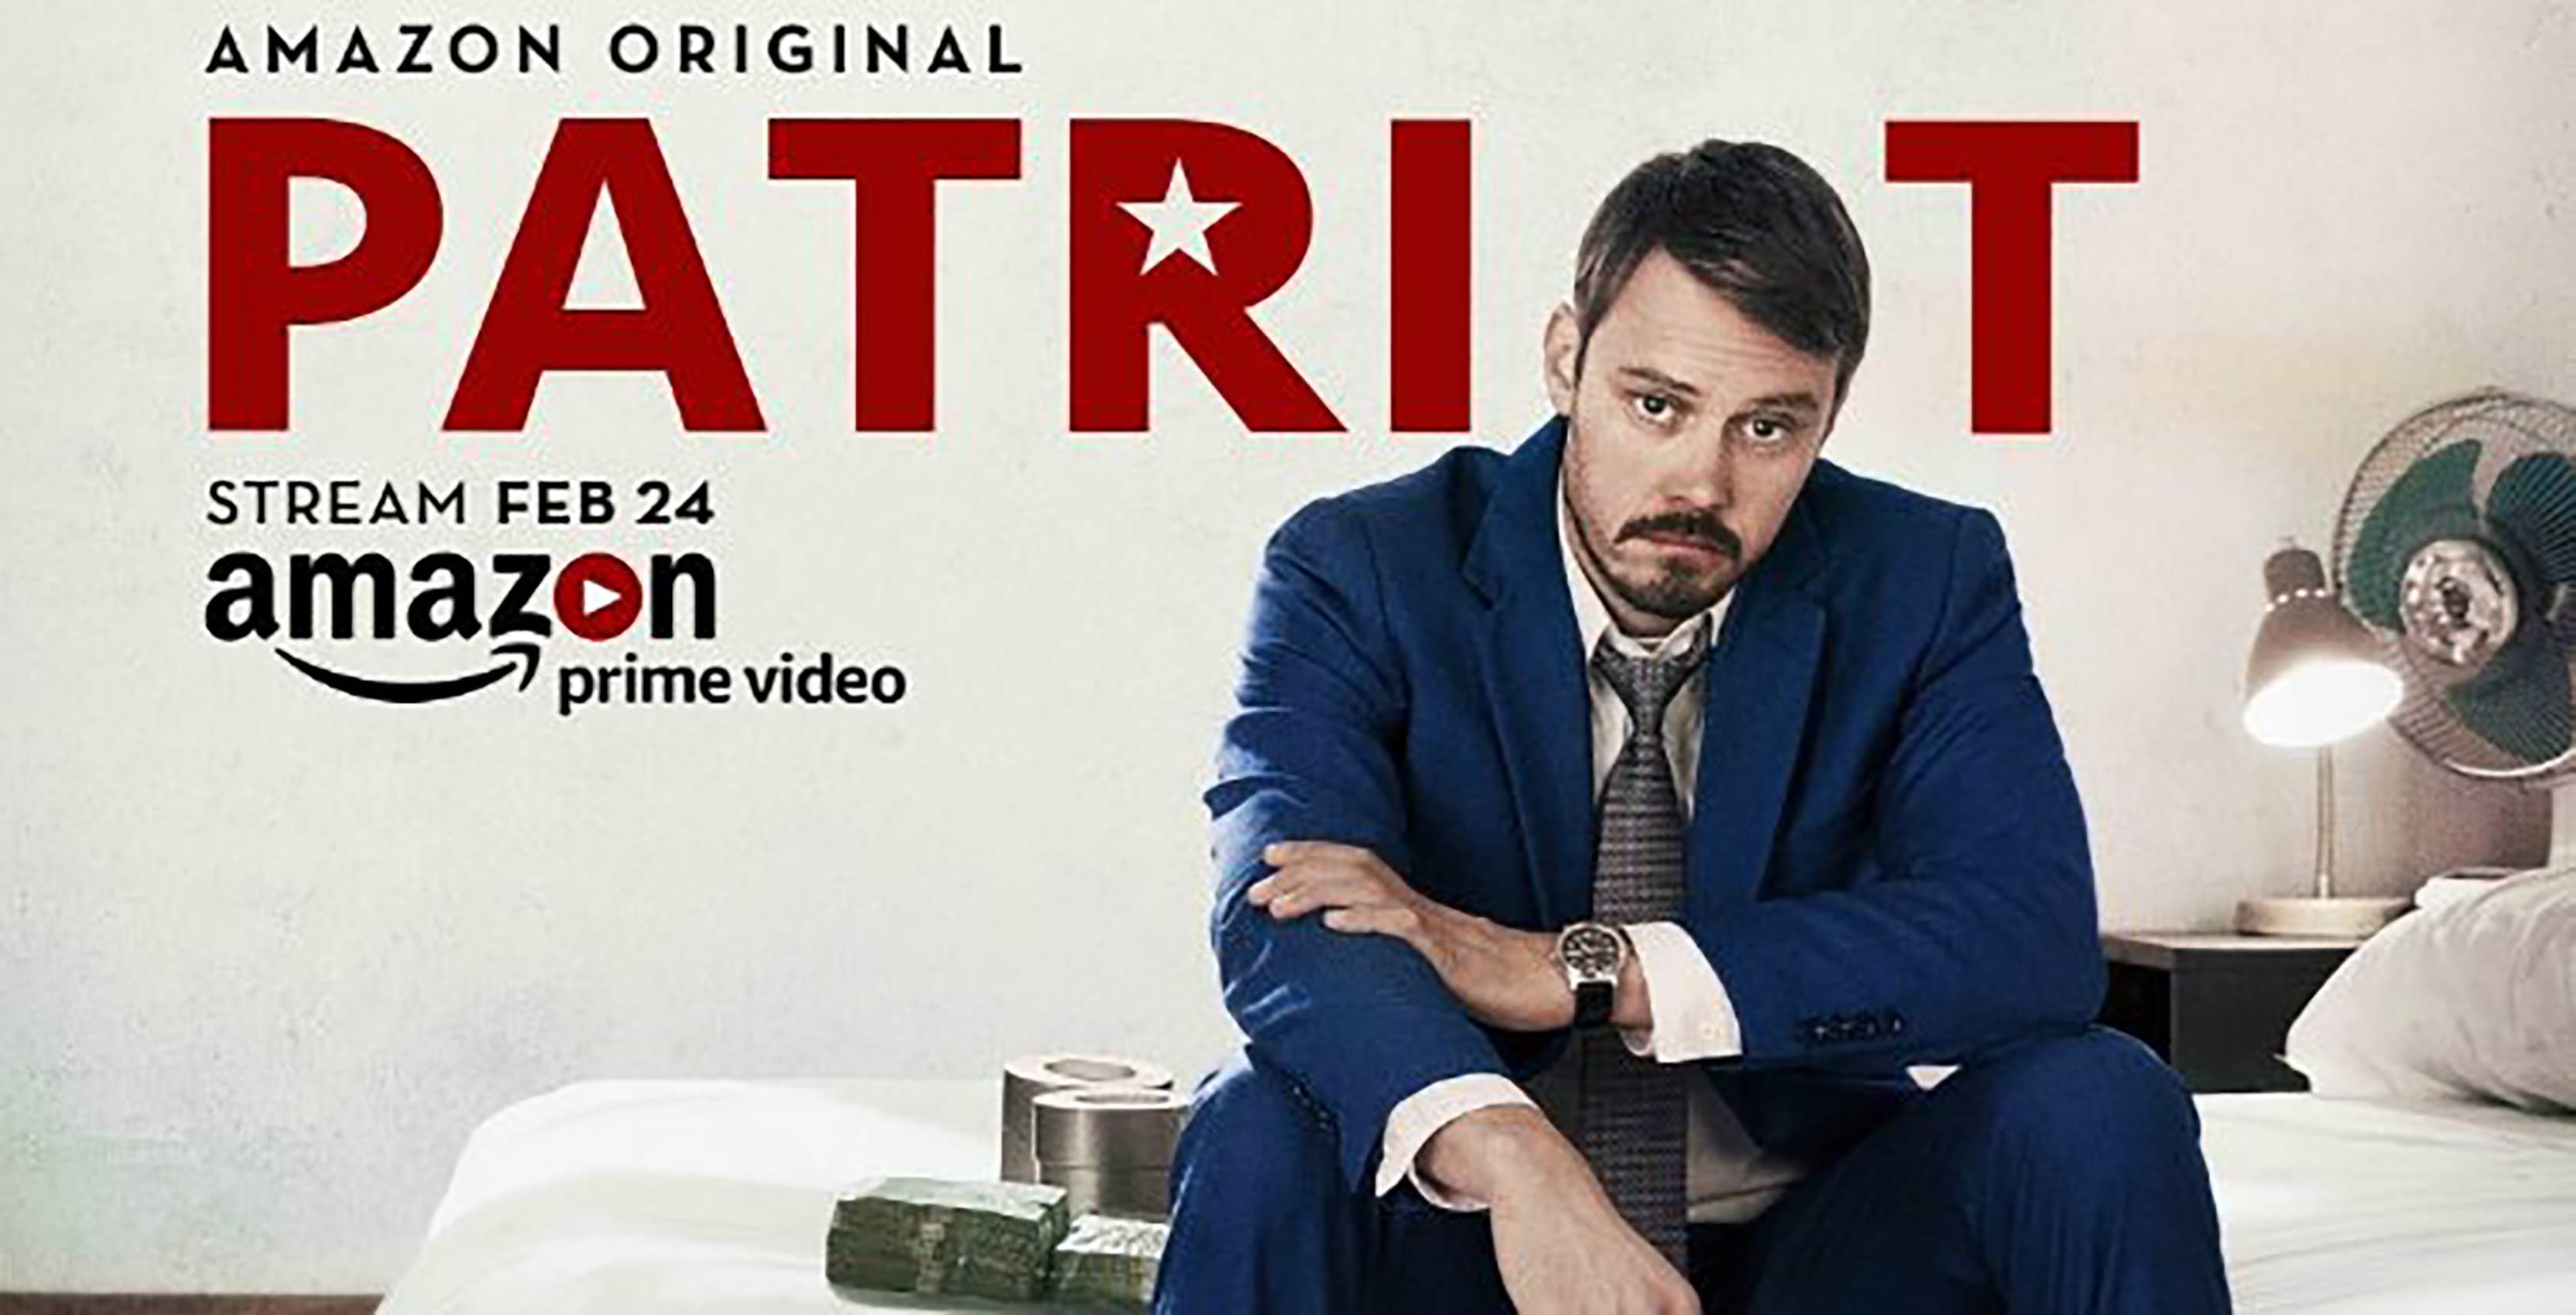 Patriot now on Amazon Prime Video